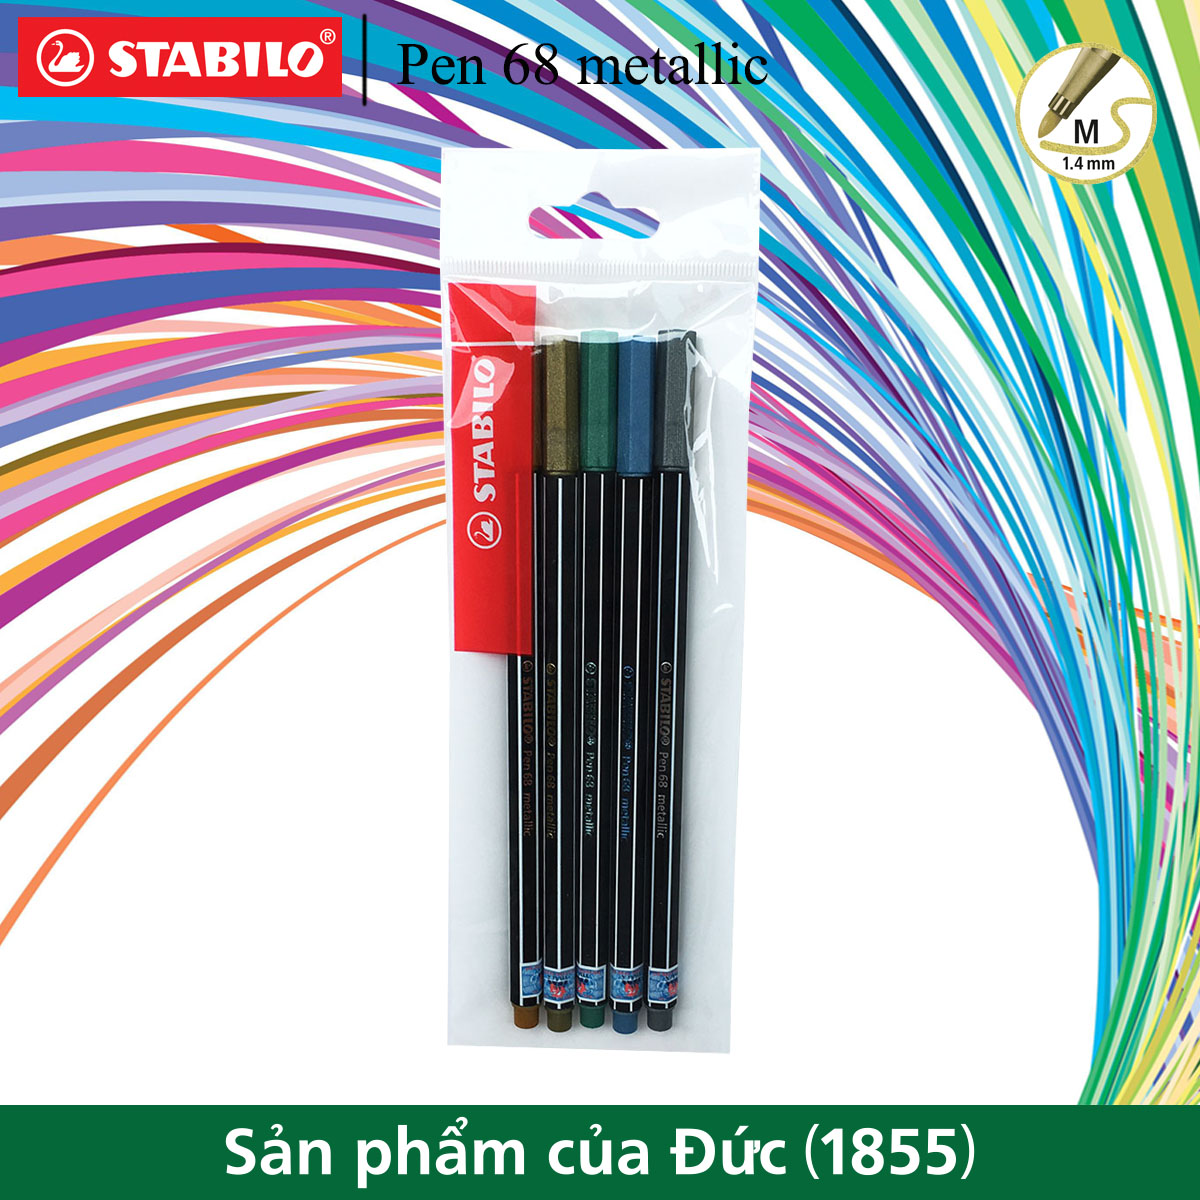 Bộ 5 bút lông nhũ STABILO Pen 68 metallic